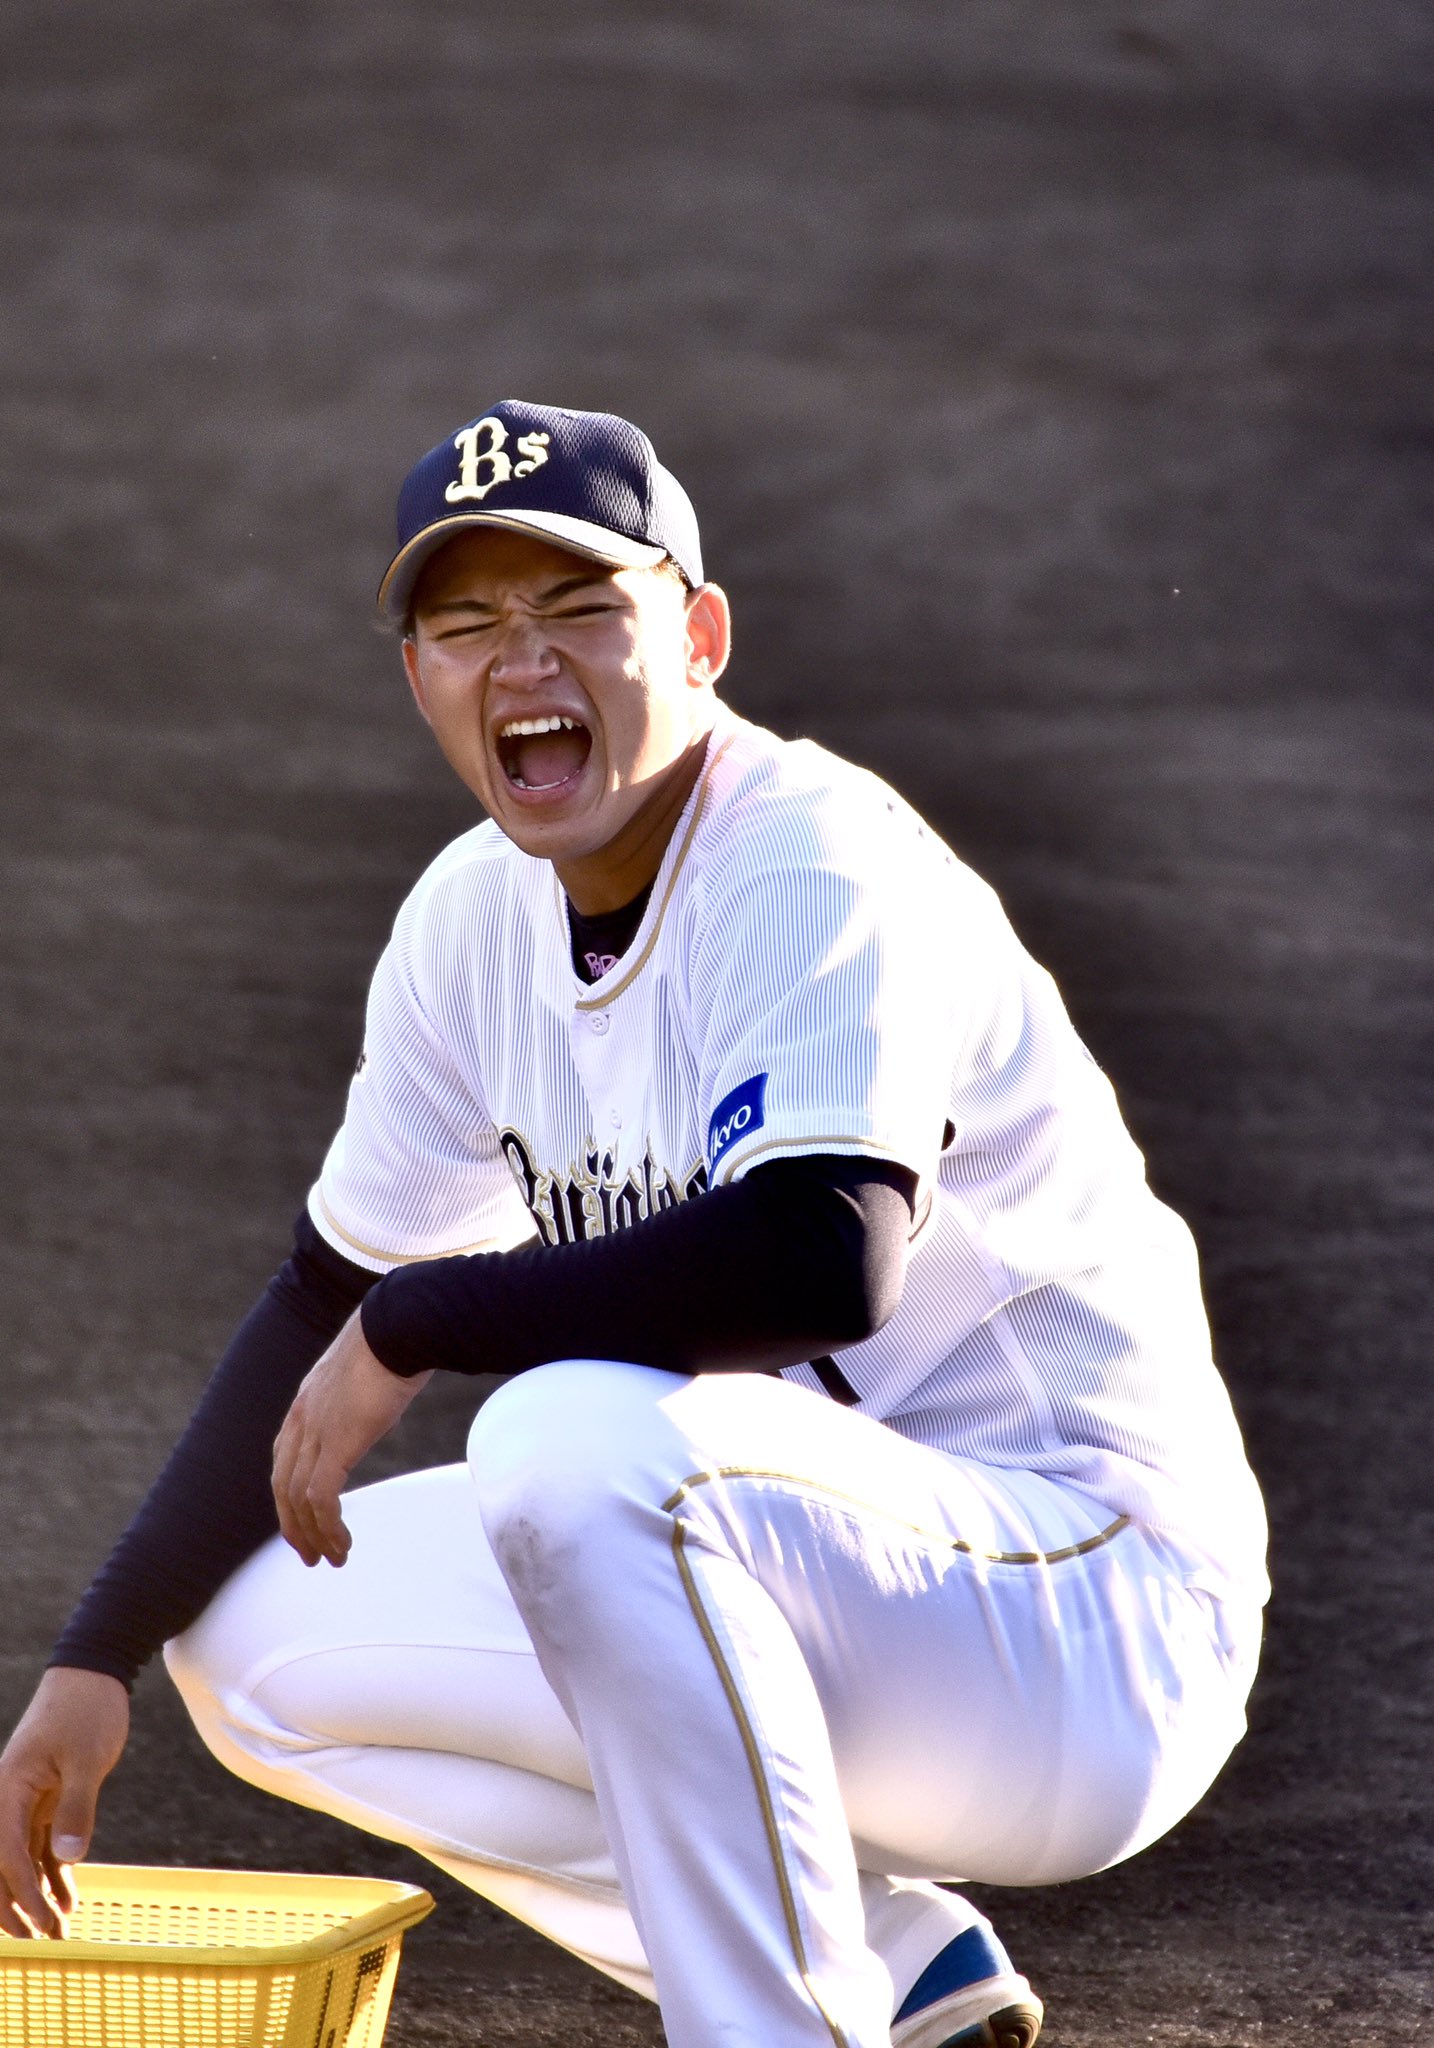 Daisuke いつも全力少年 榊原翼 千葉県生まれと千葉県の学校出身のプロ野球選手たちの写真で元気がほしい T Co Ndlumalq52 Twitter